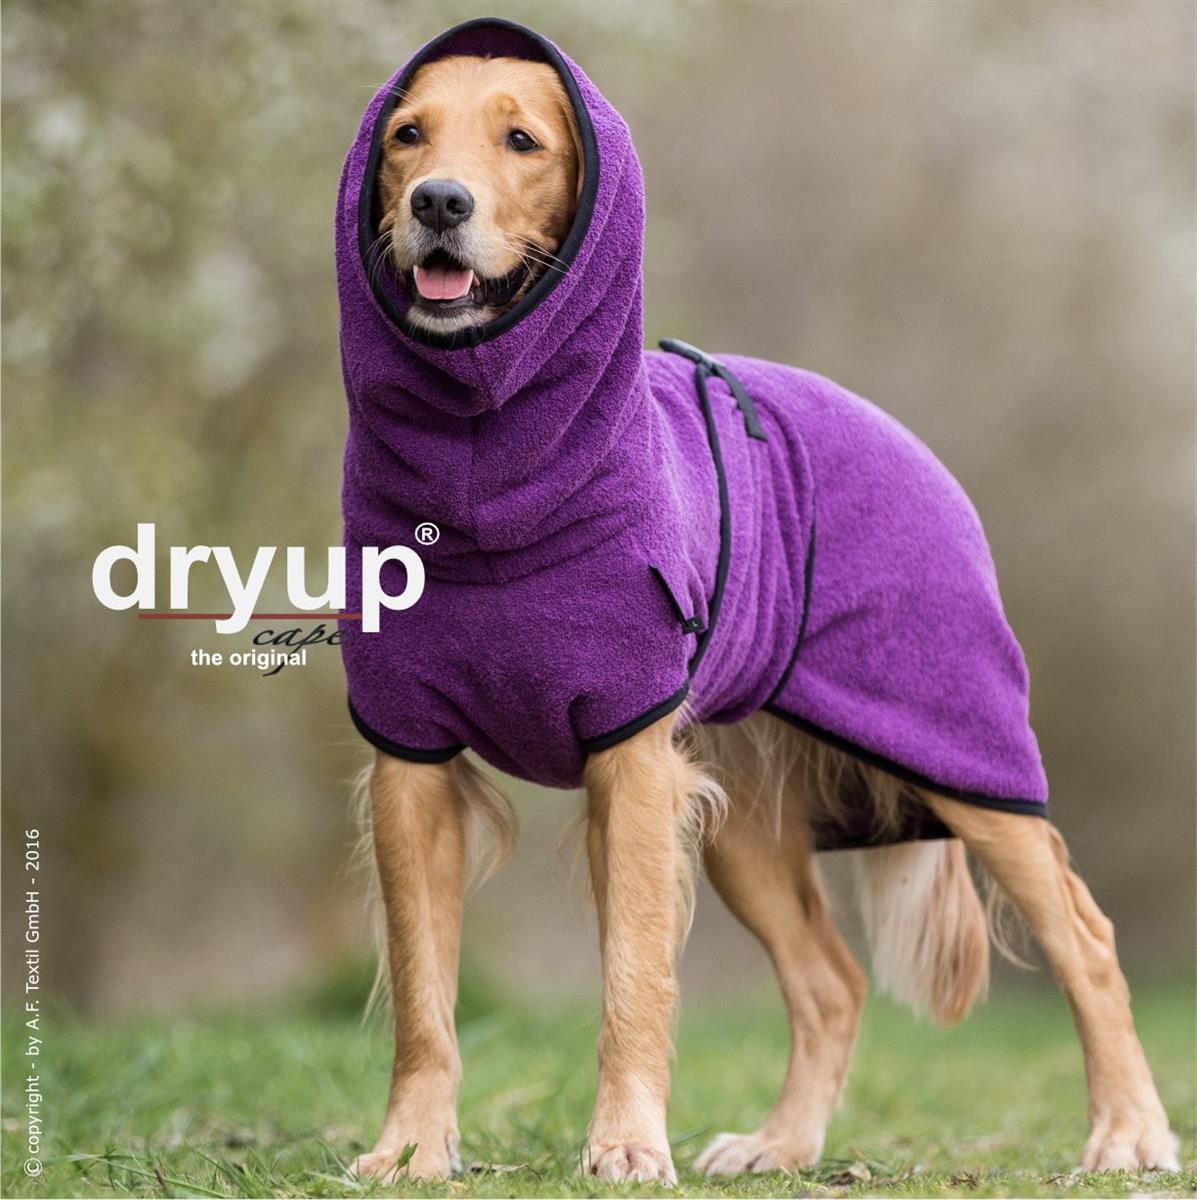 Dryup